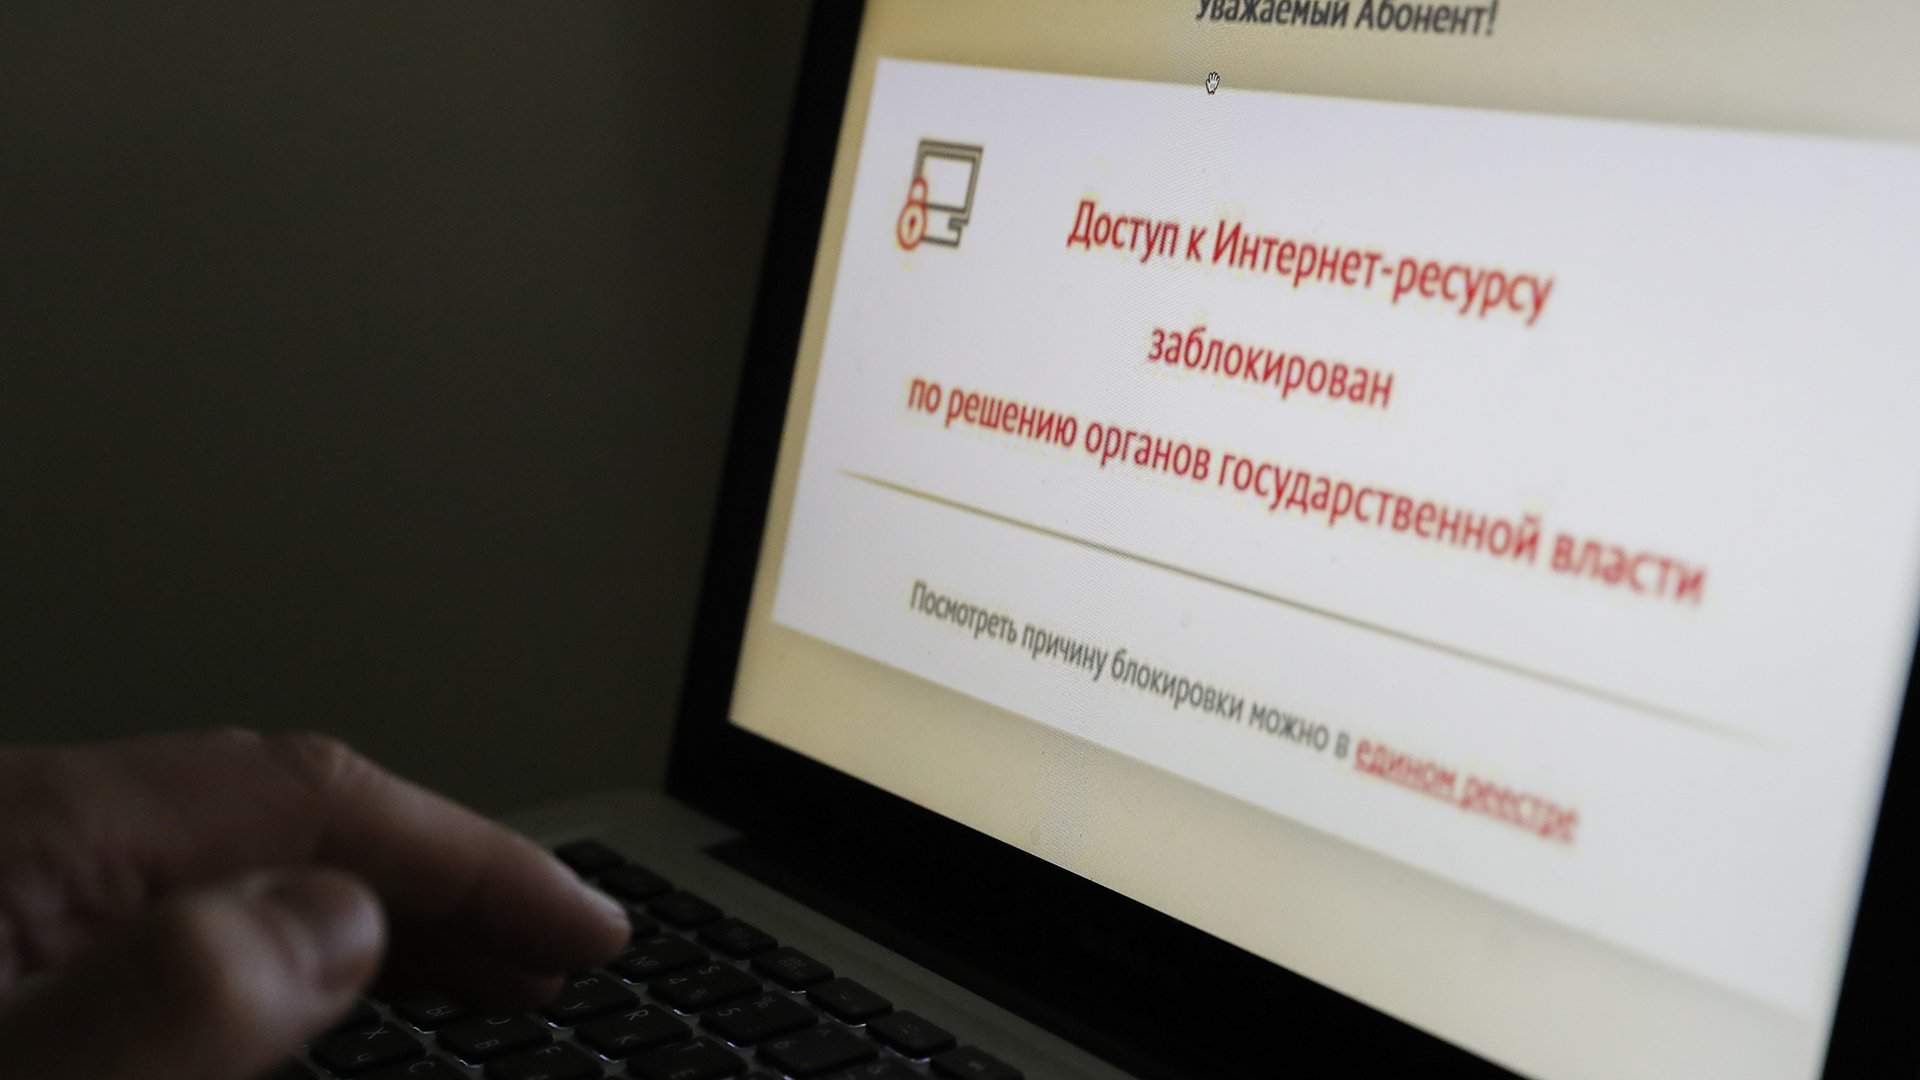 Сетевой фильтр: к удалению детского порно в Рунете привлекли IT-индустрию |  Статьи | Известия